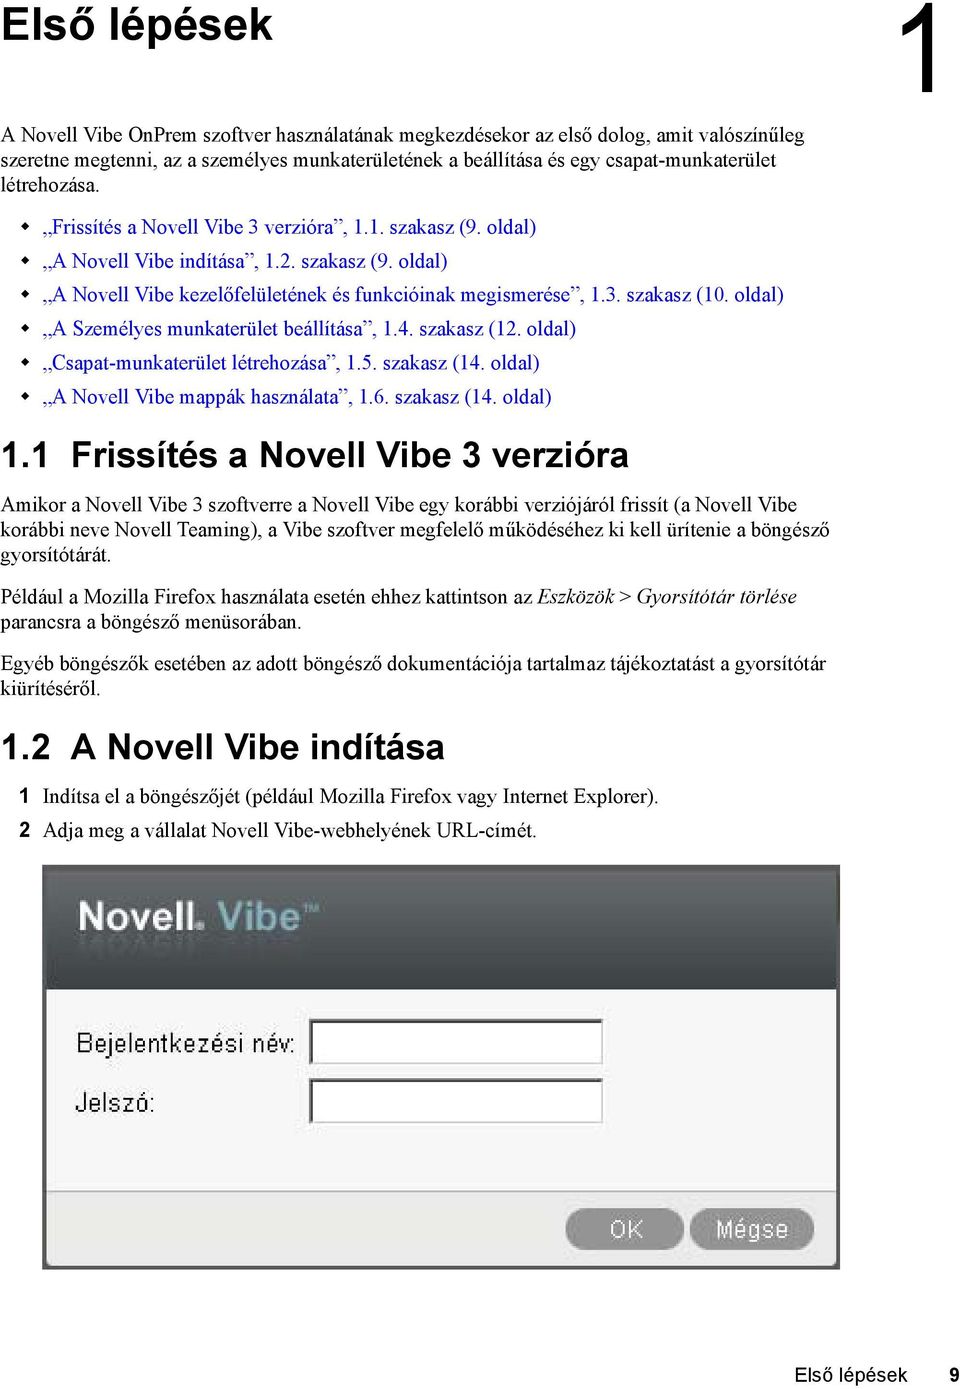 oldal) A Személyes munkaterület beállítása, 1.4. szakasz (12. oldal) Csapat-munkaterület létrehozása, 1.5. szakasz (14. oldal) A Novell Vibe mappák használata, 1.6. szakasz (14. oldal) 1.